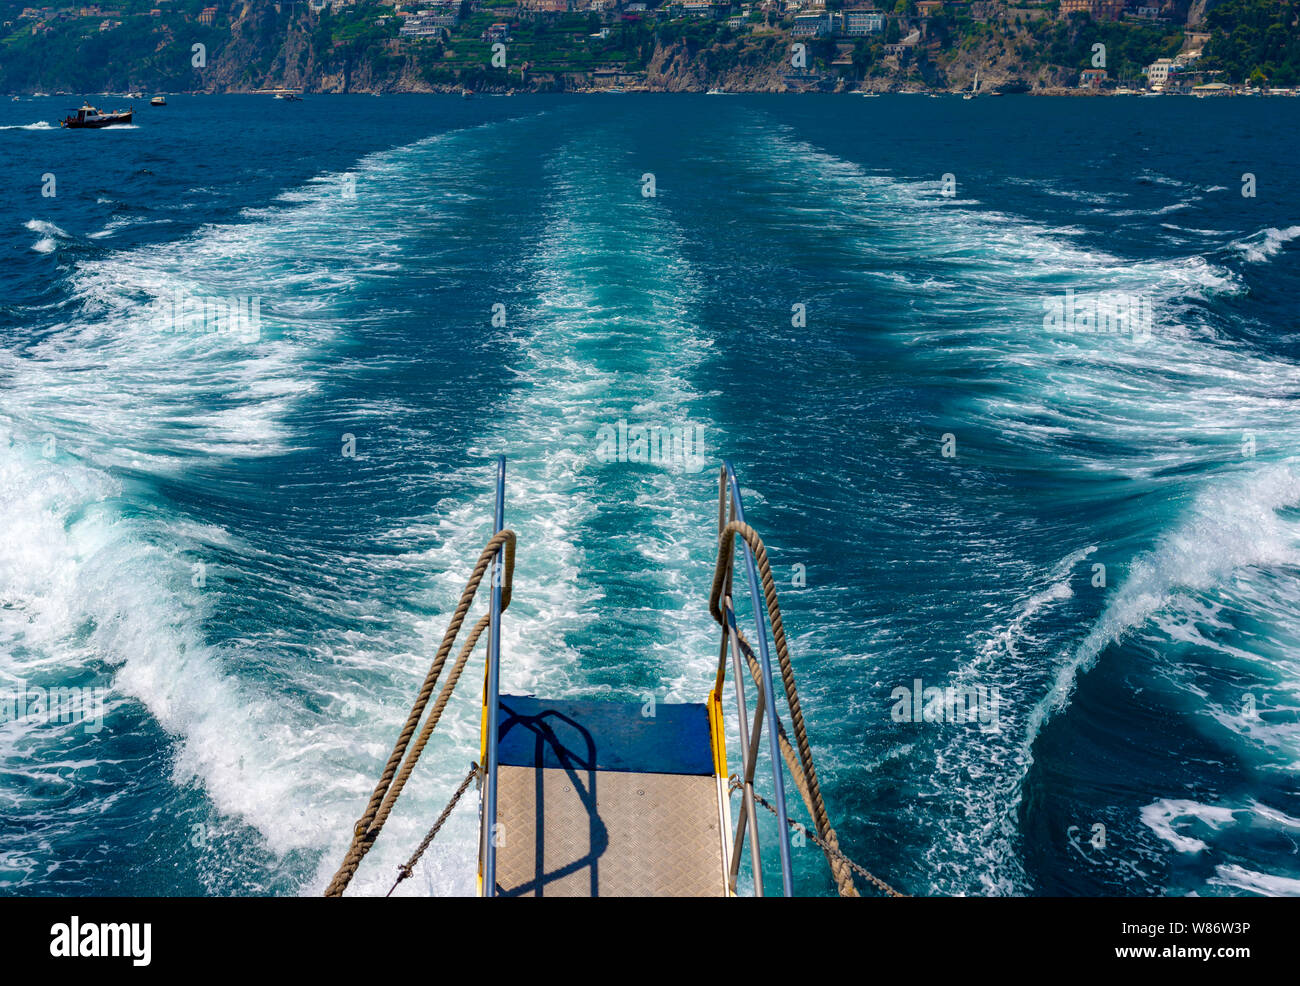 Estela producida por un ferry regular a los resorts de la costa de Sorrento. Salerno - Italia Foto de stock